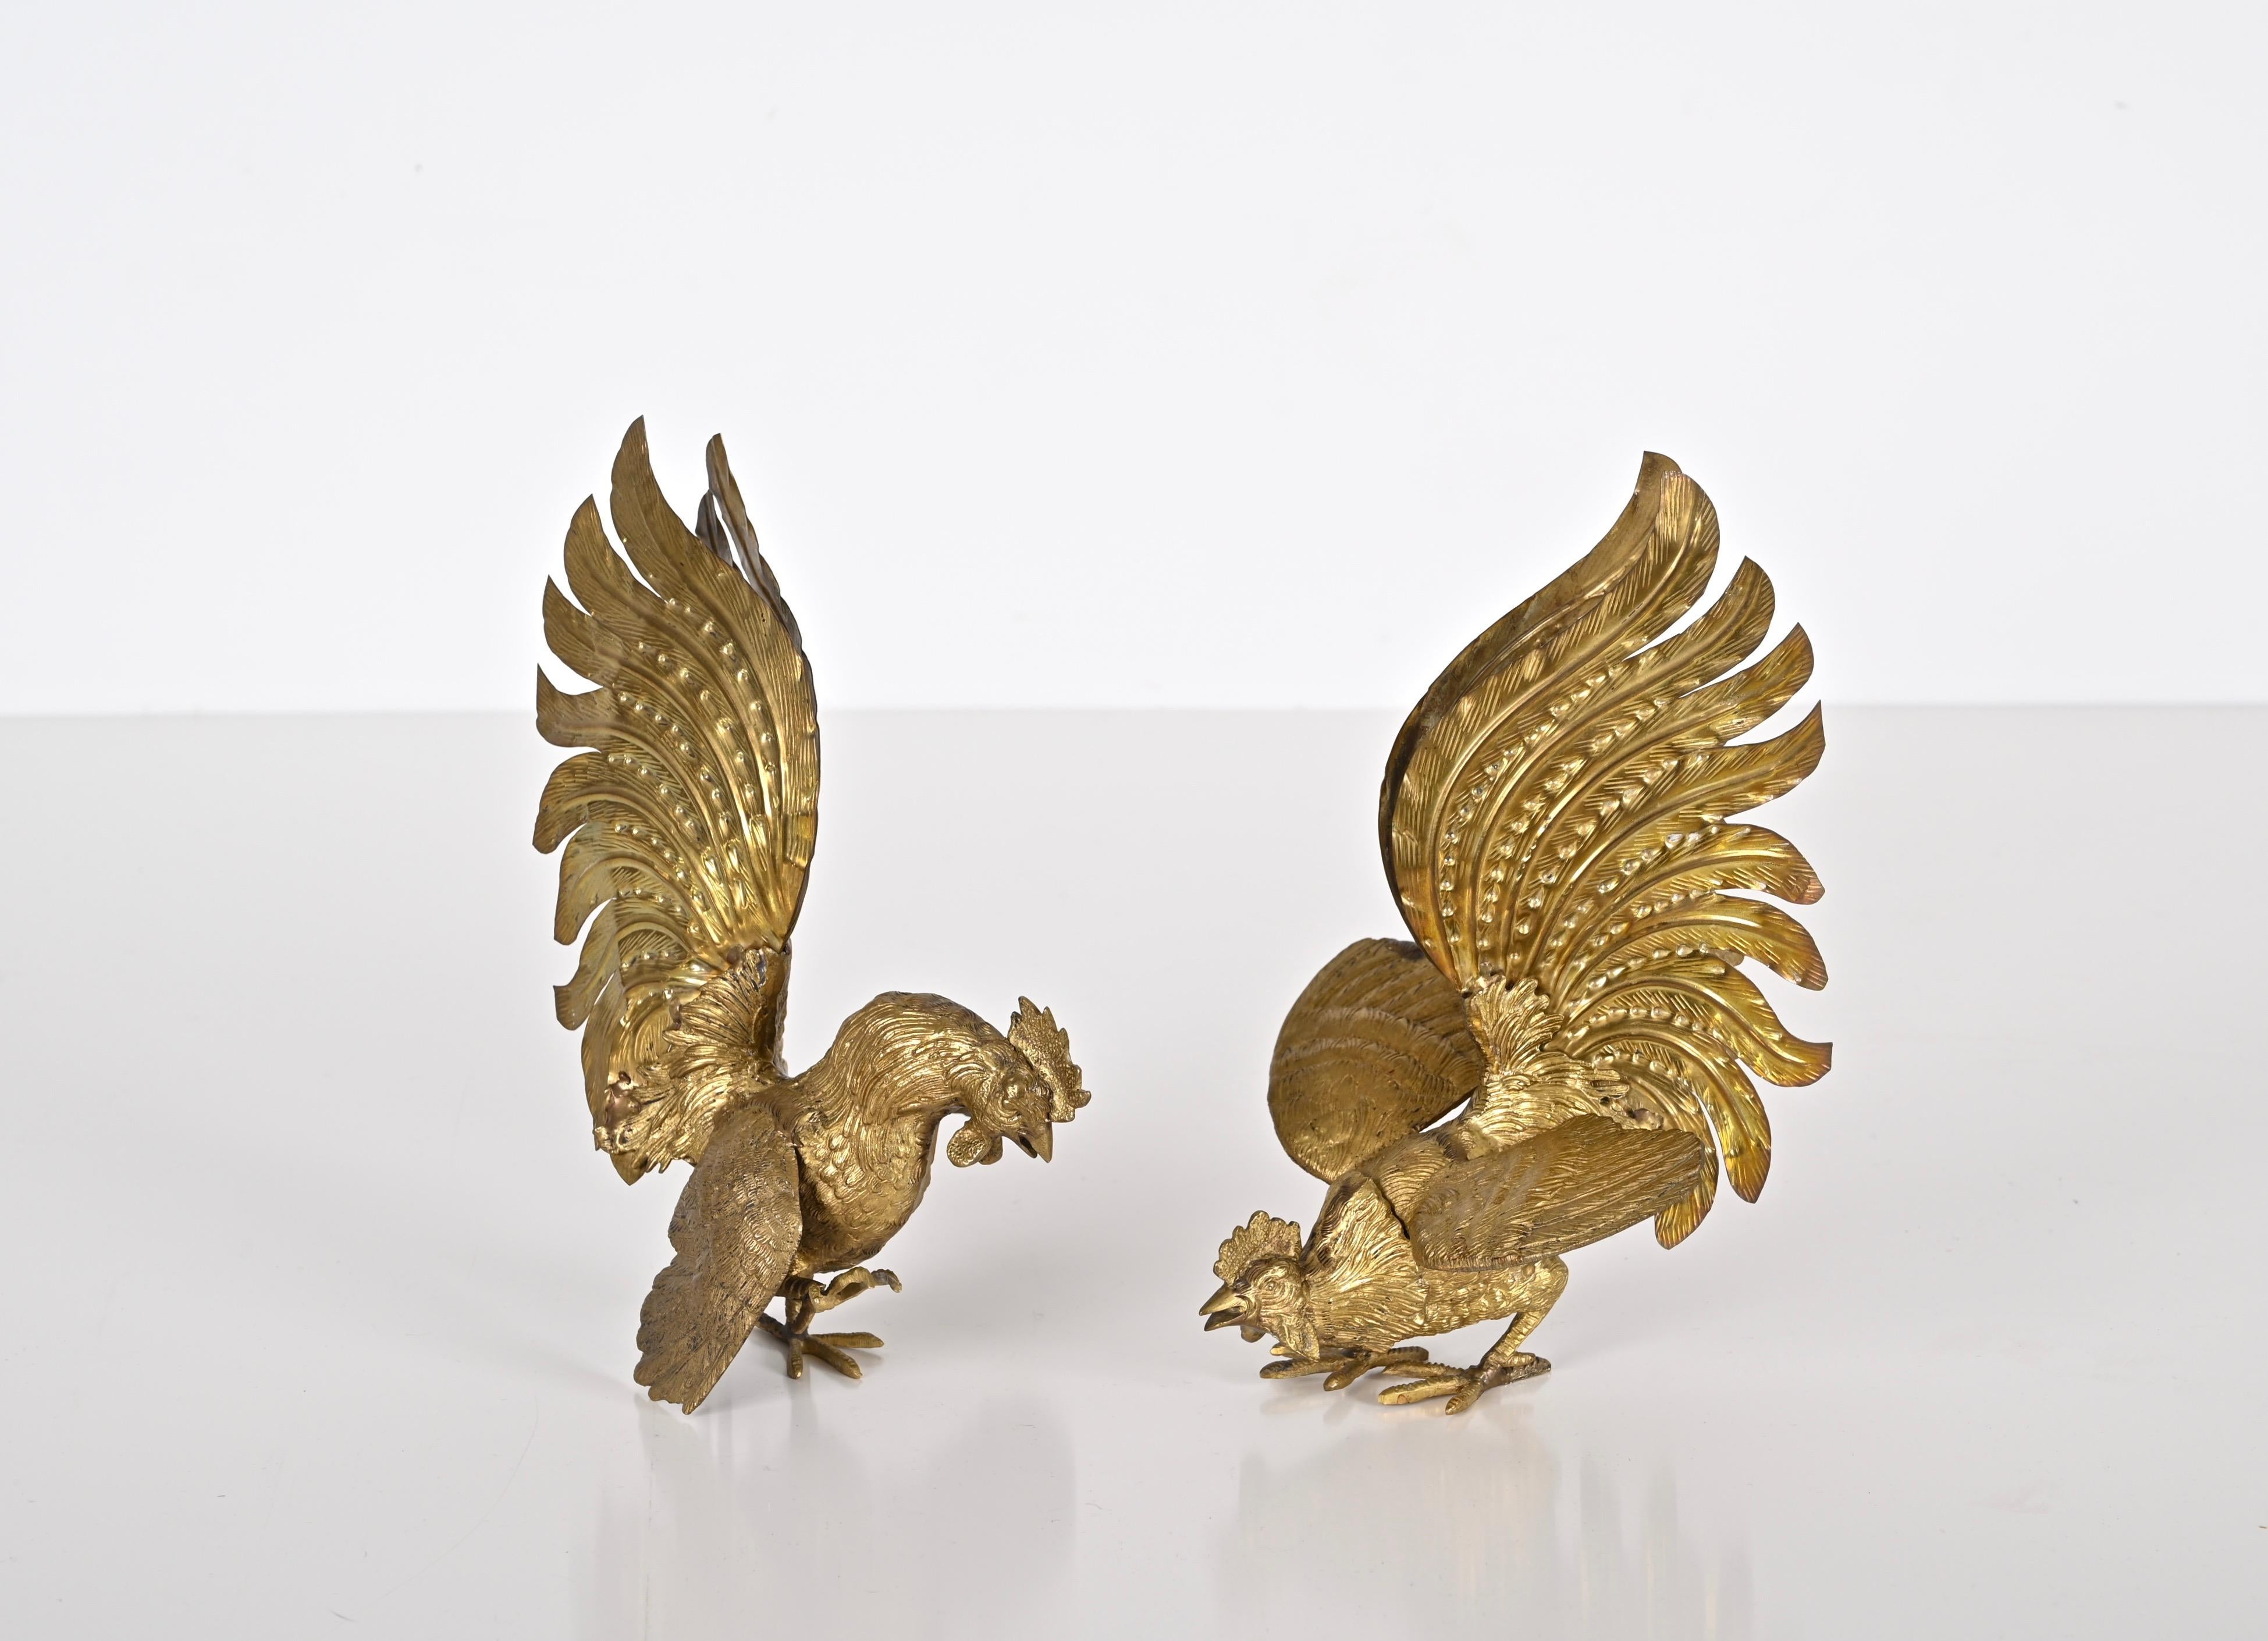 Wunderschönes Paar vergoldeter Kampfhähne als Ornamente. Diese schönen Skulpturen wurden in den 1960er Jahren in Italien hergestellt. 

Ein ikonisches Set aus den 1960er Jahren, das unglaublich selten vergoldet zu finden ist. Diese animierten